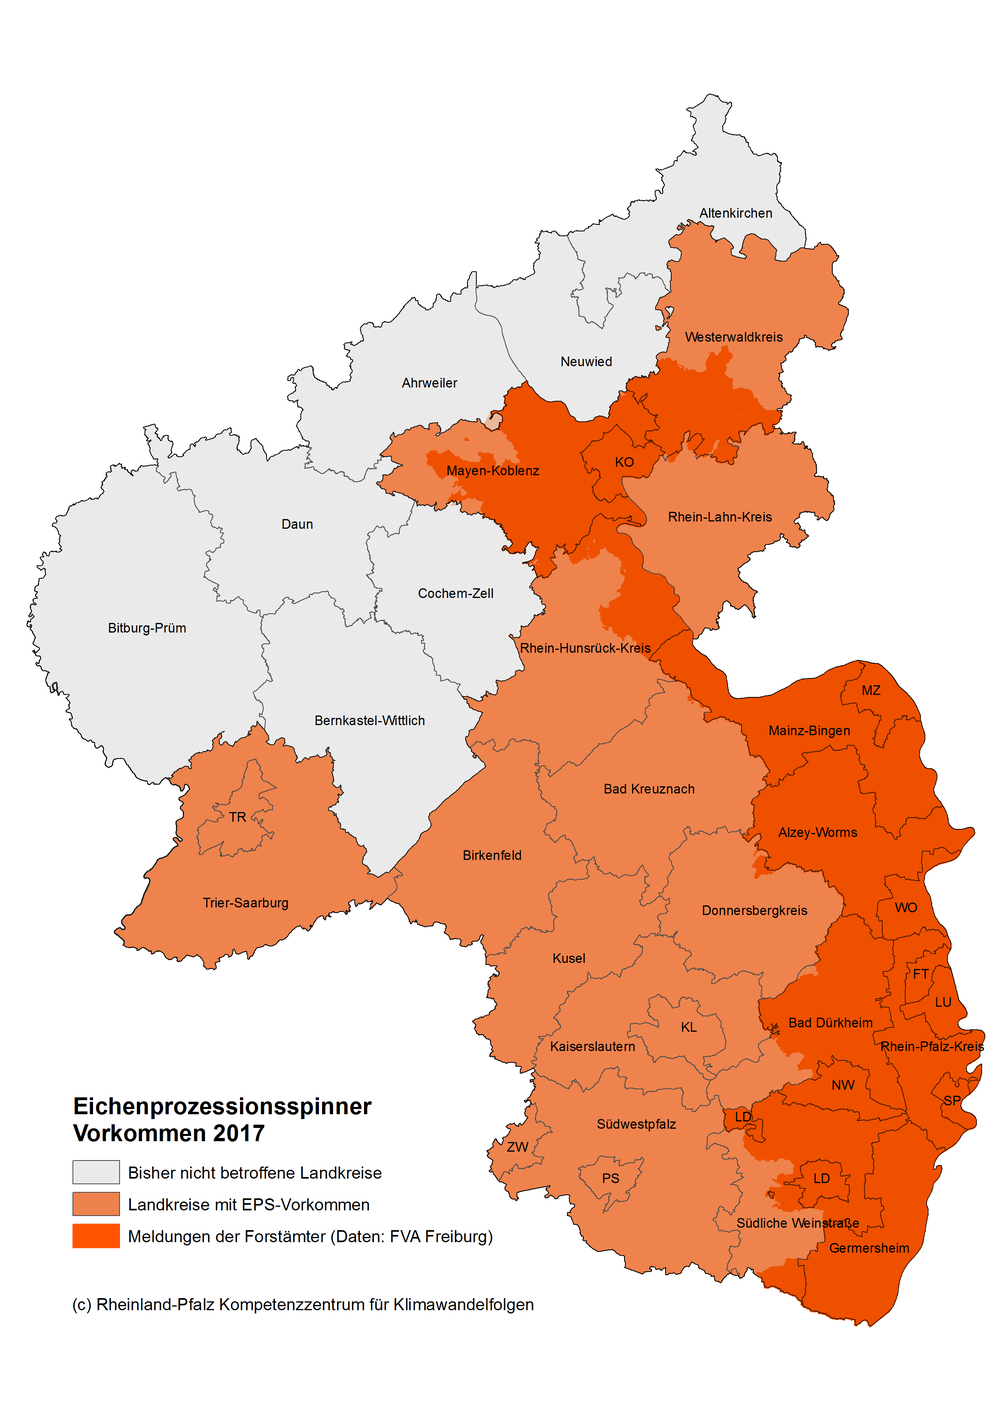 EPS-Meldungen in Rheinland-Pfalz 2013-2017